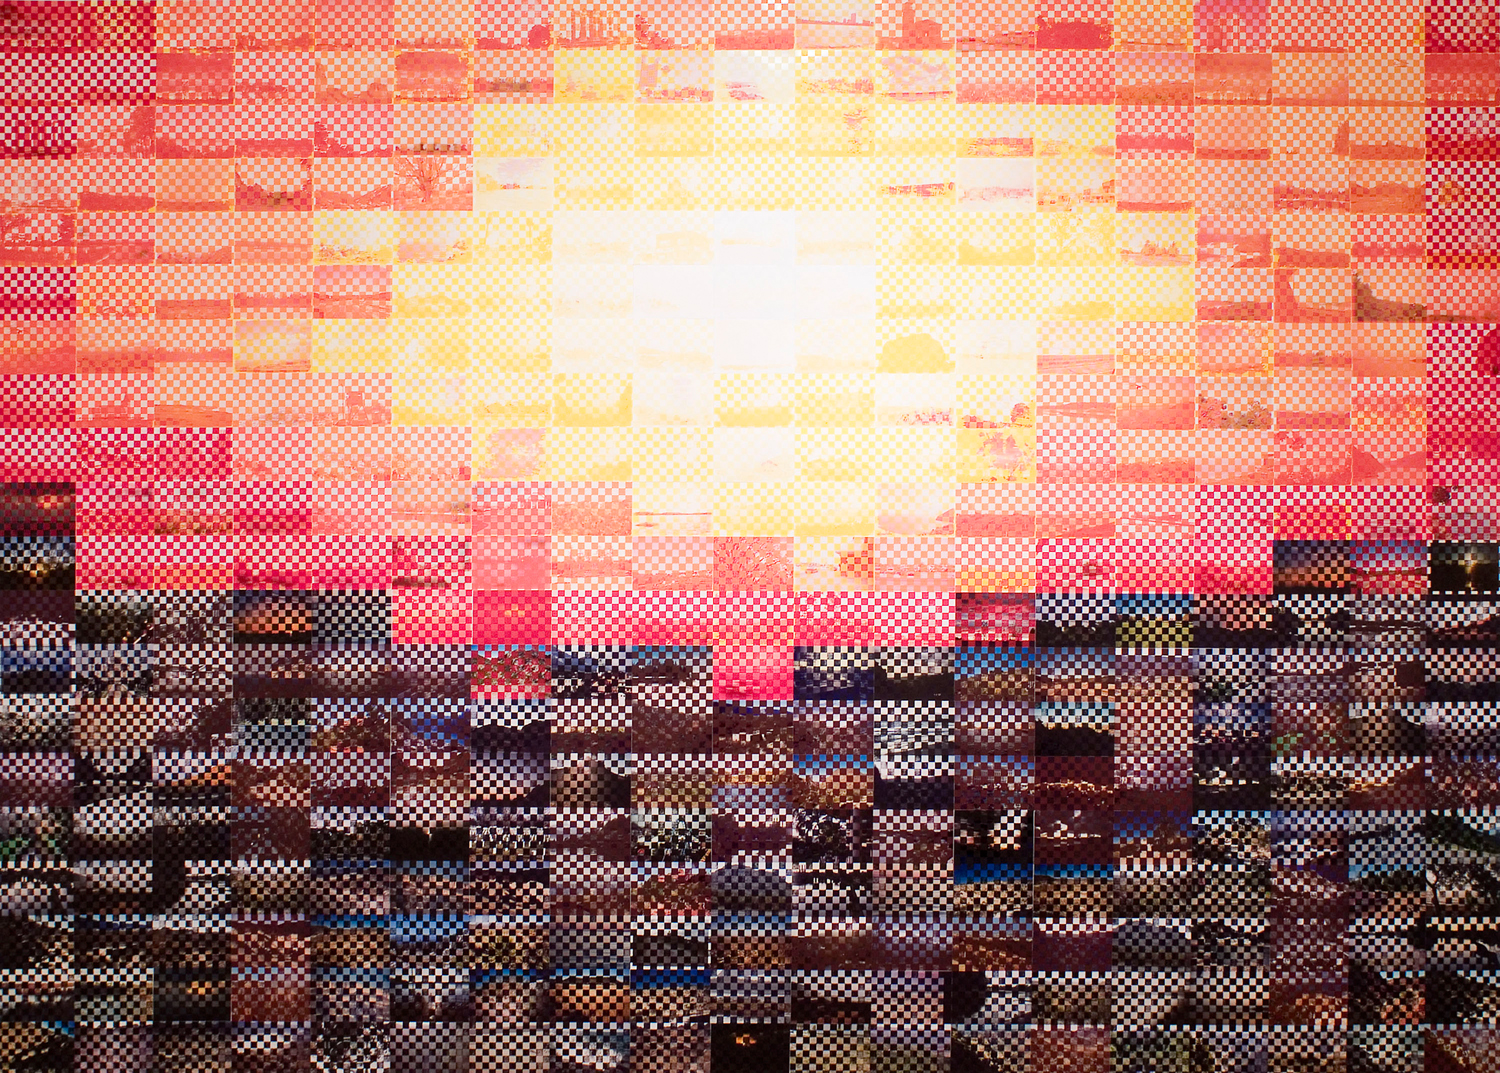 Atari Sunset, 2007